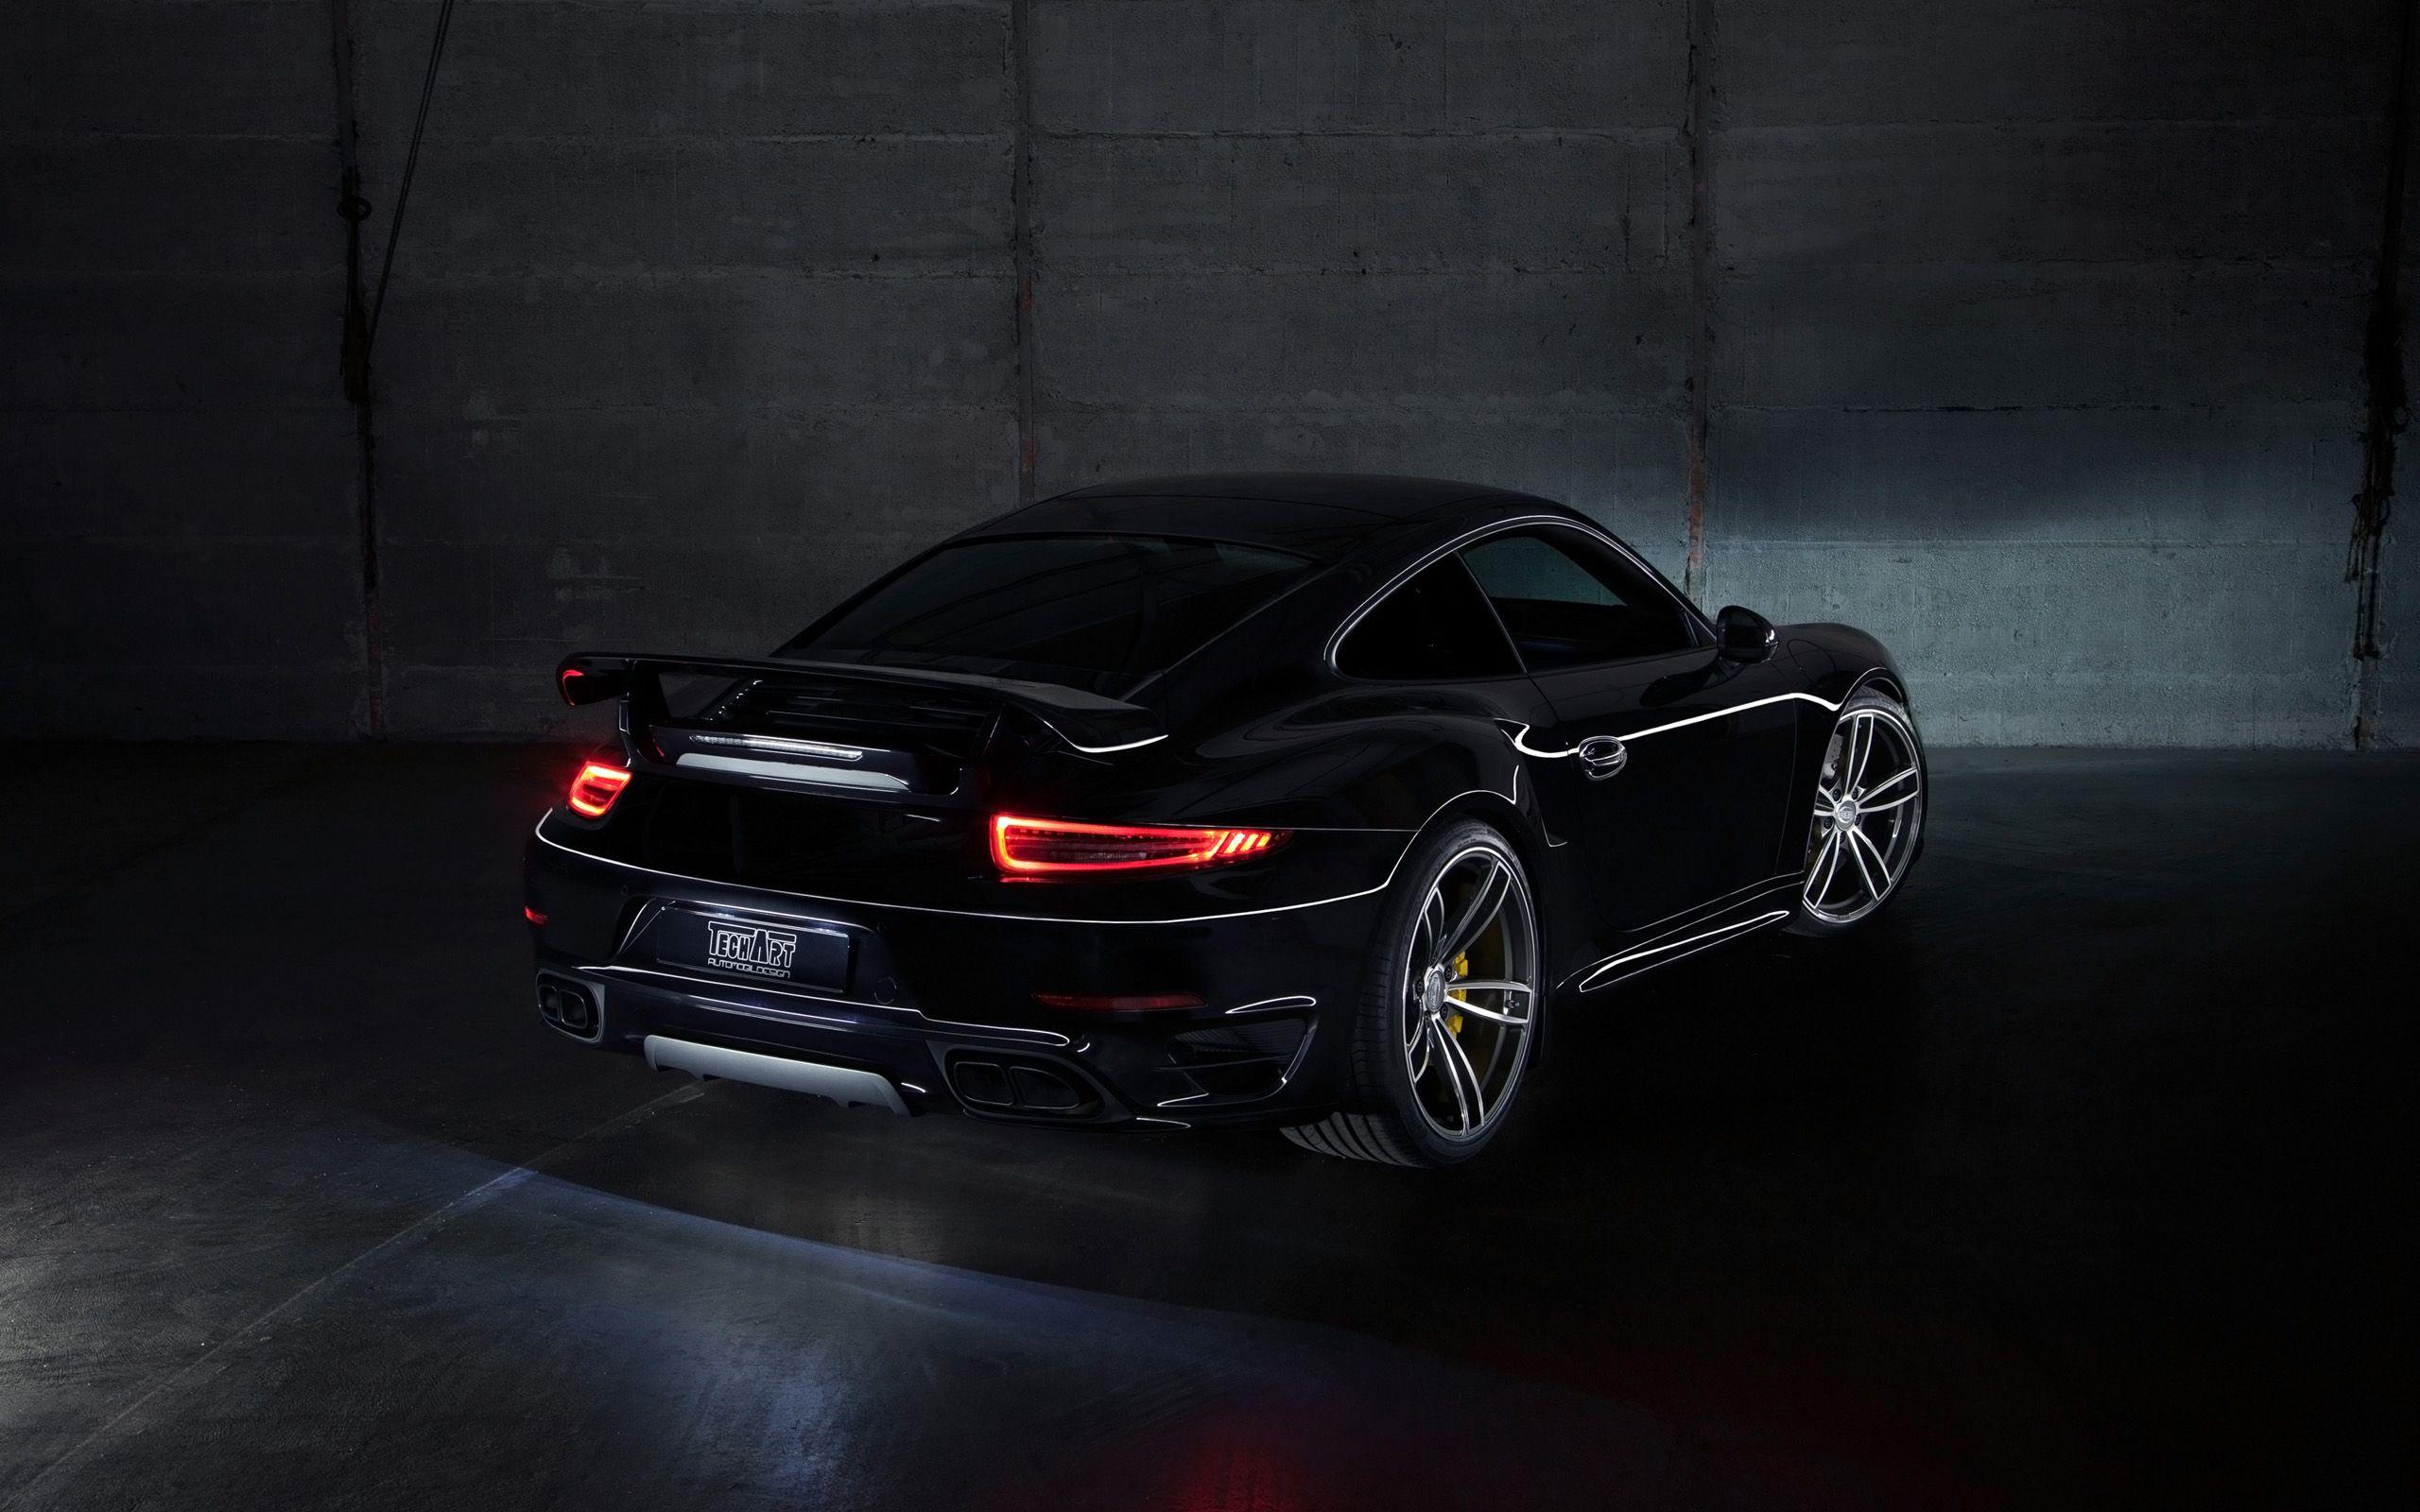 Những bức tranh nền Porsche Carrera đẹp mắt này sẽ khiến bạn nghĩ ngay đến tốc độ và cảm giác lái xe tốc độ cao. Với sức mạnh đến từ động cơ 6 xi-lanh và thiết kế tinh tế, chiếc xe này sẽ là một lựa chọn hoàn hảo cho những người yêu thích xe hơi.